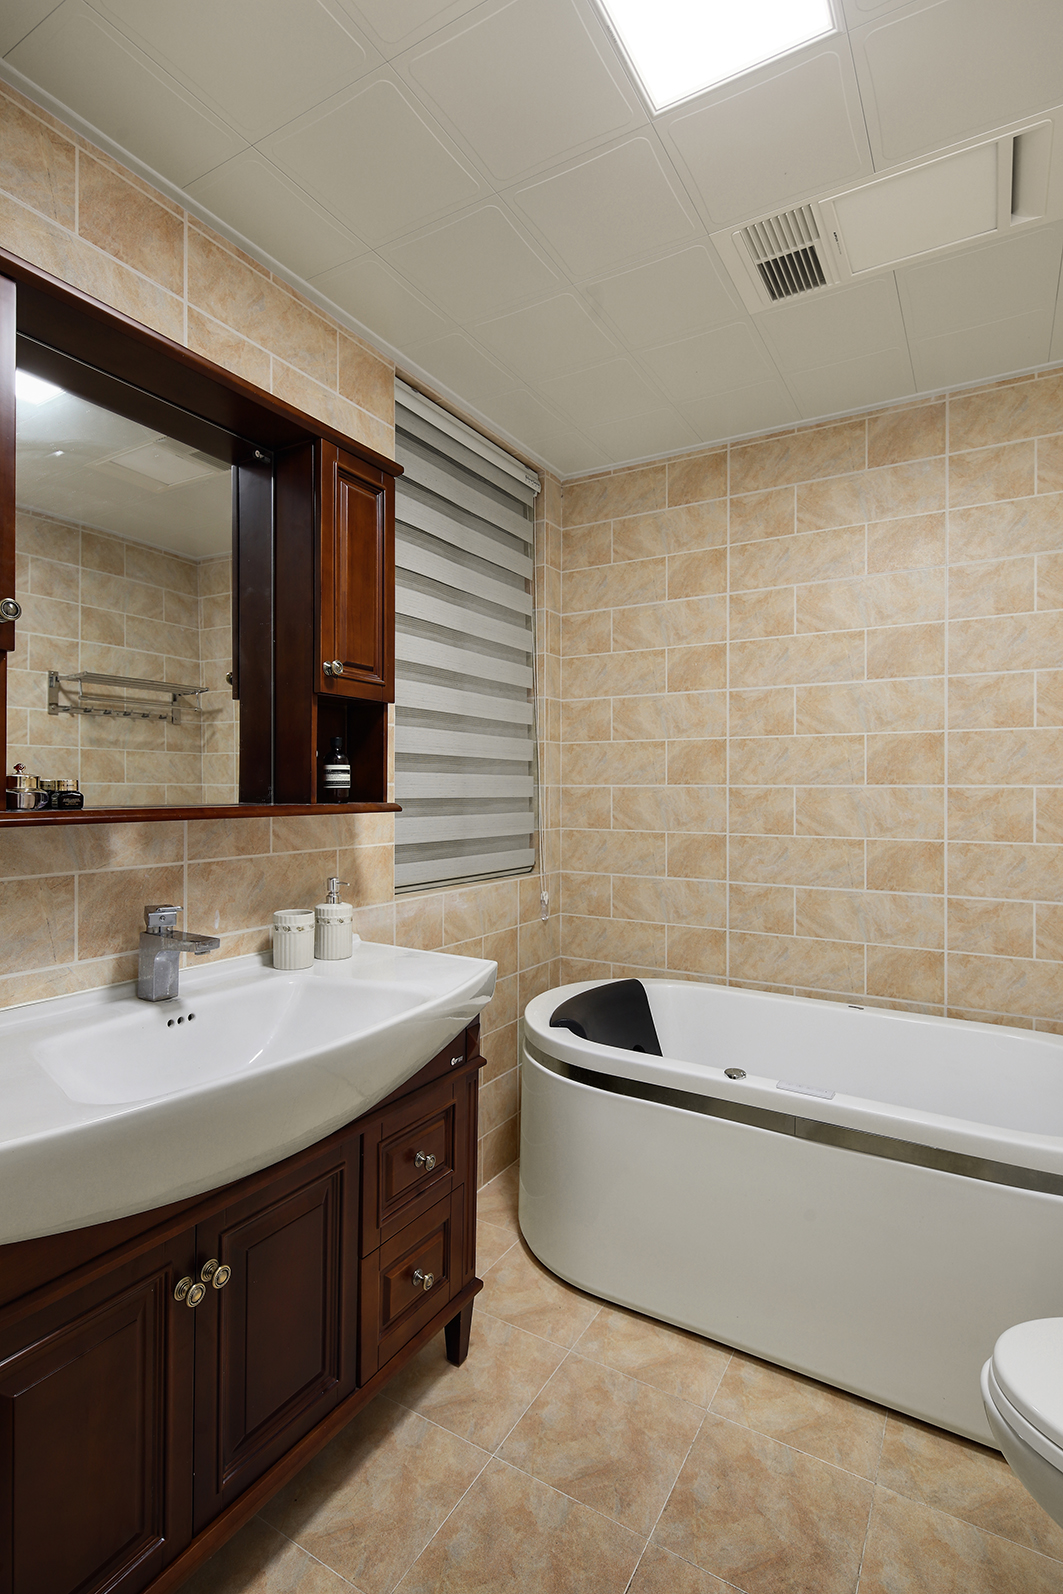 瓷砖 洗手台 浴缸 126㎡美式风格卫生间装修效果图 北欧风格二居装修